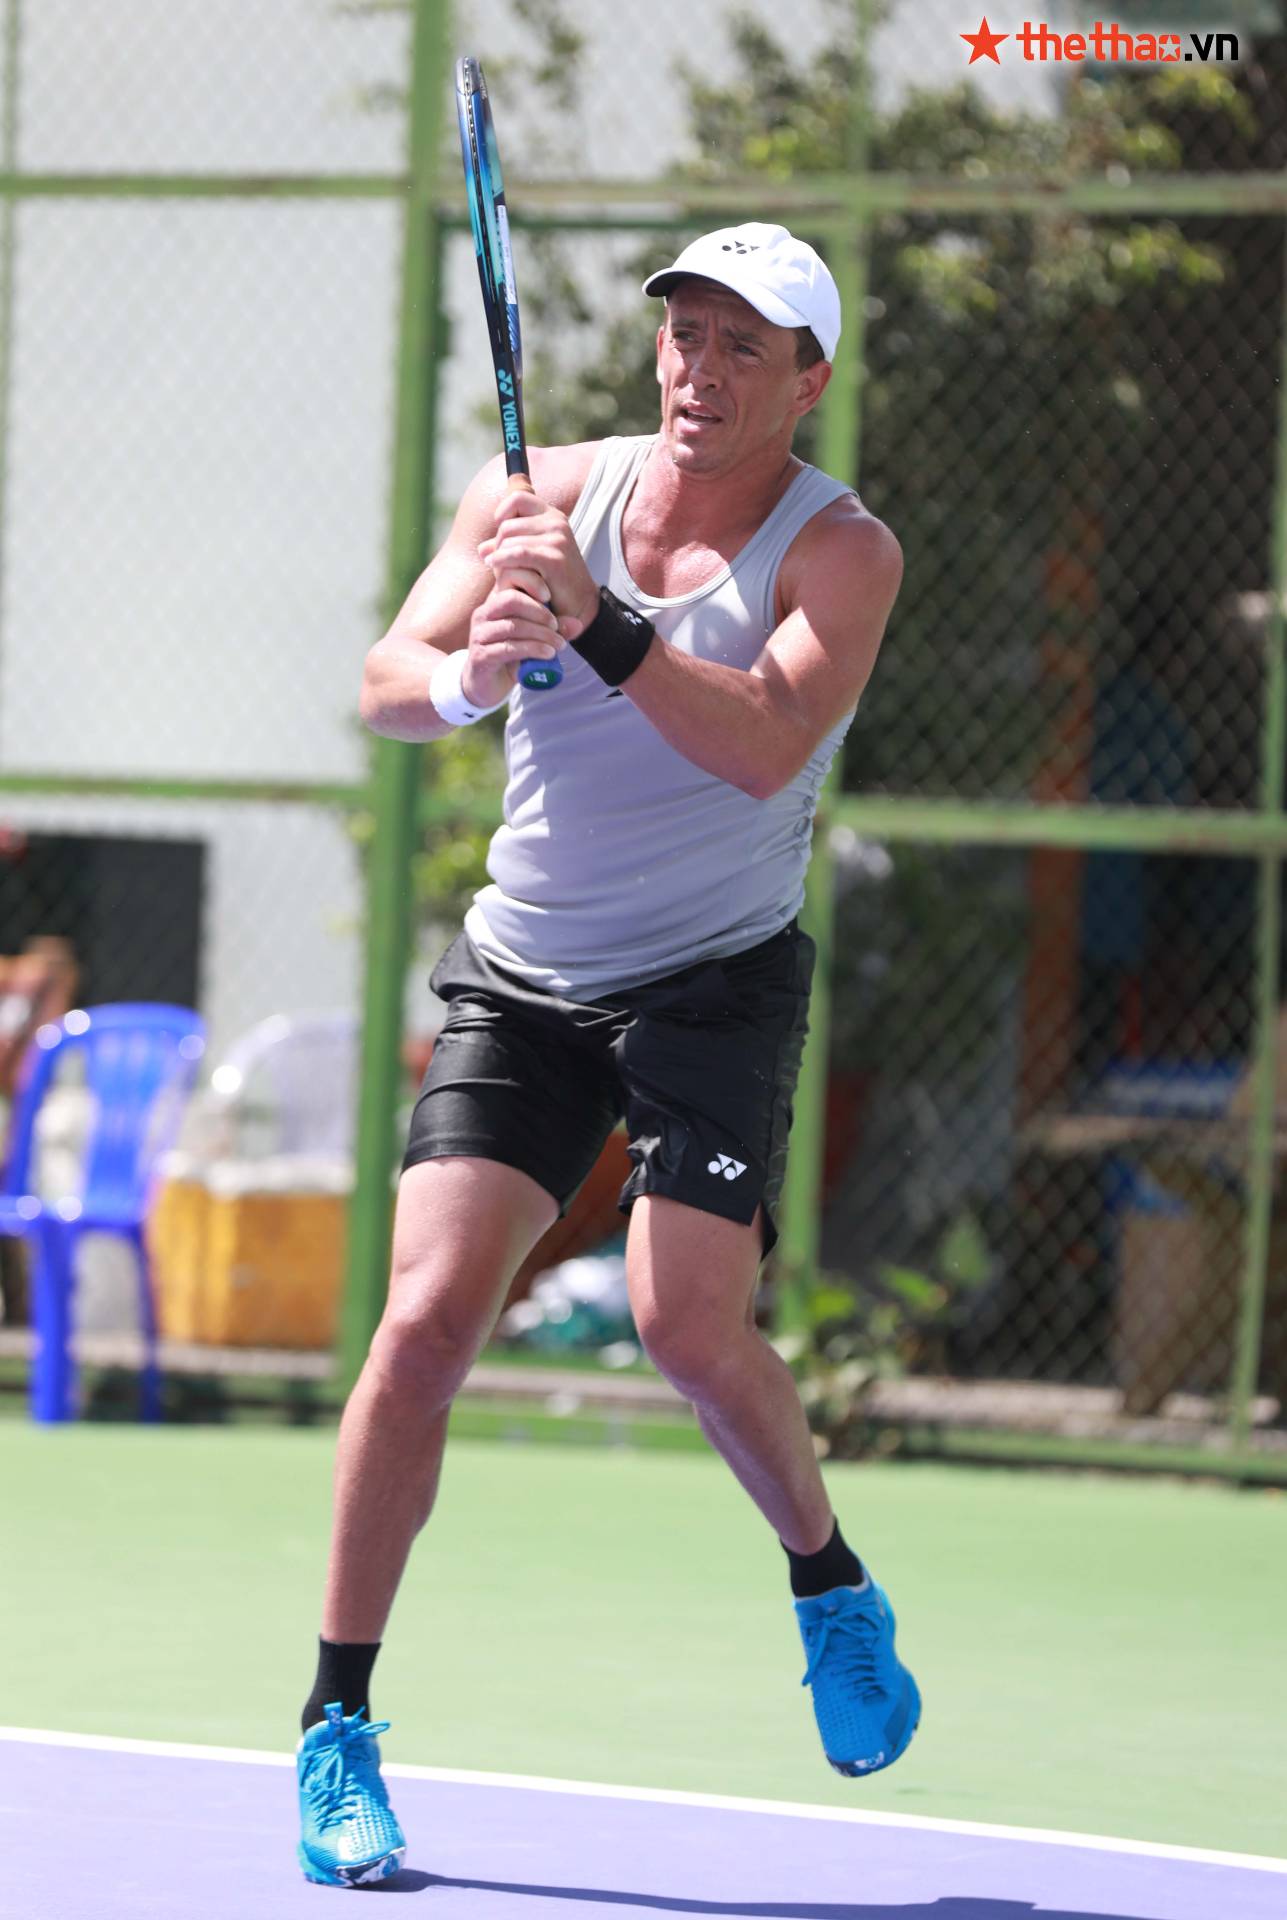 M25 Tây Ninh: Tay vợt New Zealand tập giữa trưa nắng, khoe cơ bắp cuồn cuộn ở tuổi 35 - Ảnh 6